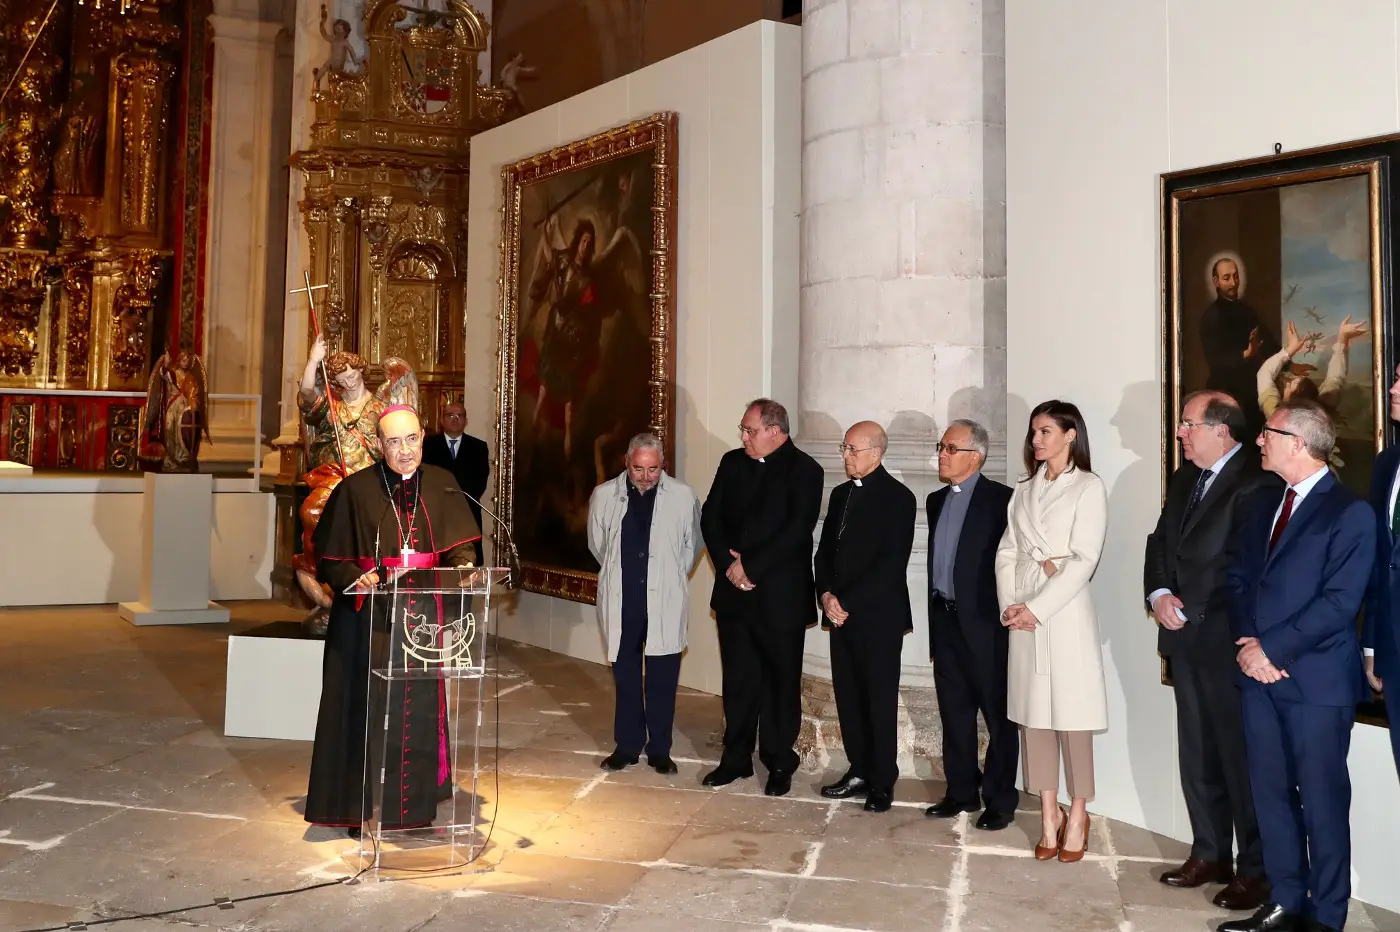 Queen Letizia visited exhibition